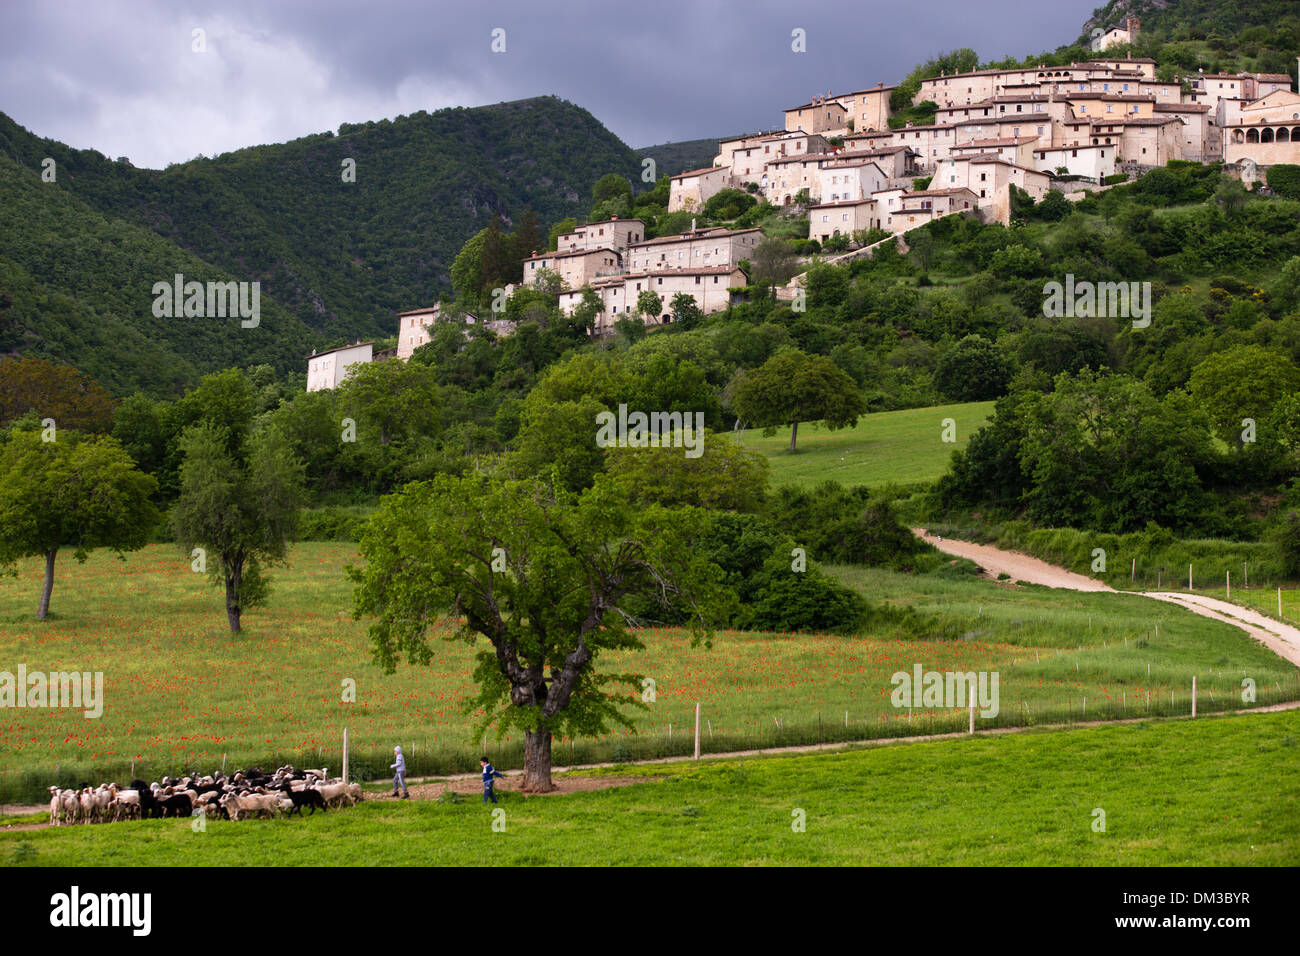 Garde d'enfants, un troupeau de moutons, Campi, Valnerina, Ombrie, Italie Banque D'Images